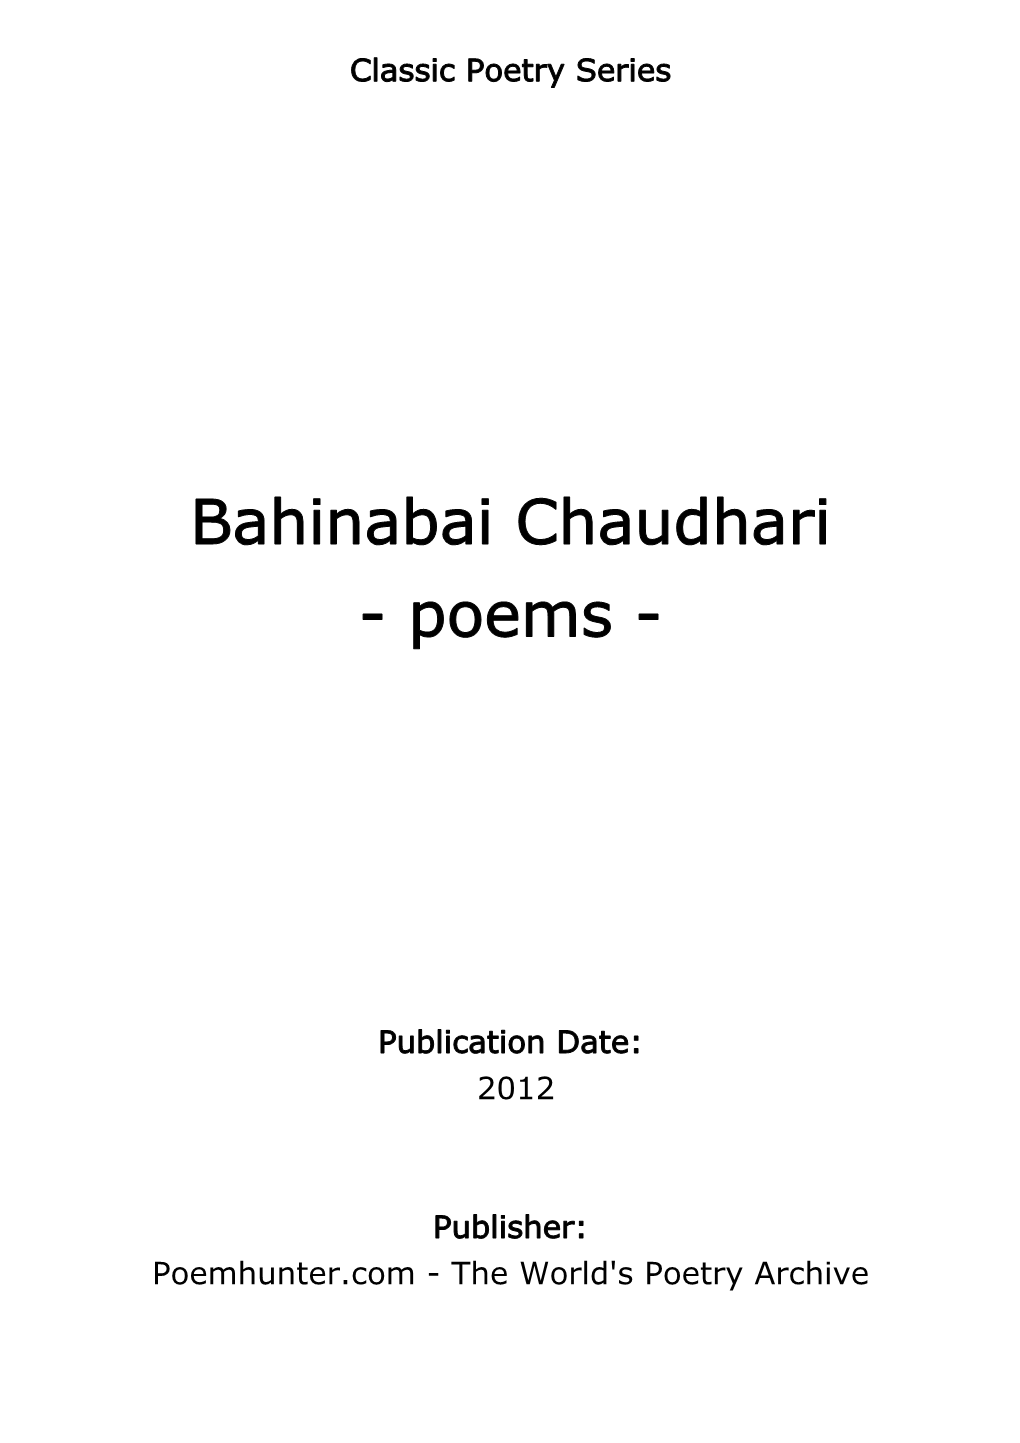 Bahinabai Chaudhari - Poems